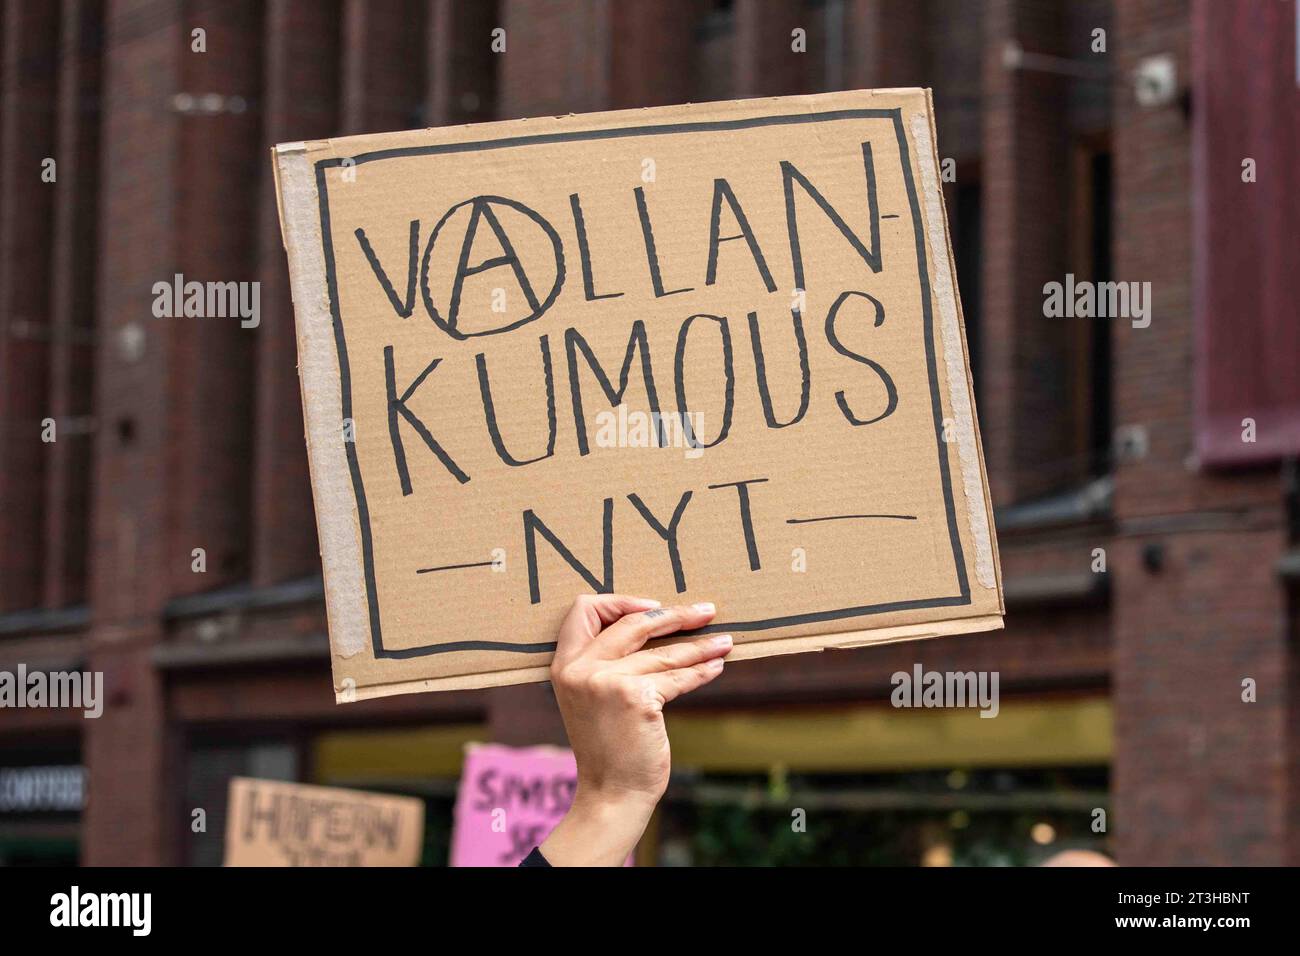 Vallankumous nyt. Cartello di cartone scritto a mano su me emme vaikene! Manifestazione contro il razzismo a Helsinki, Finlandia. Foto Stock